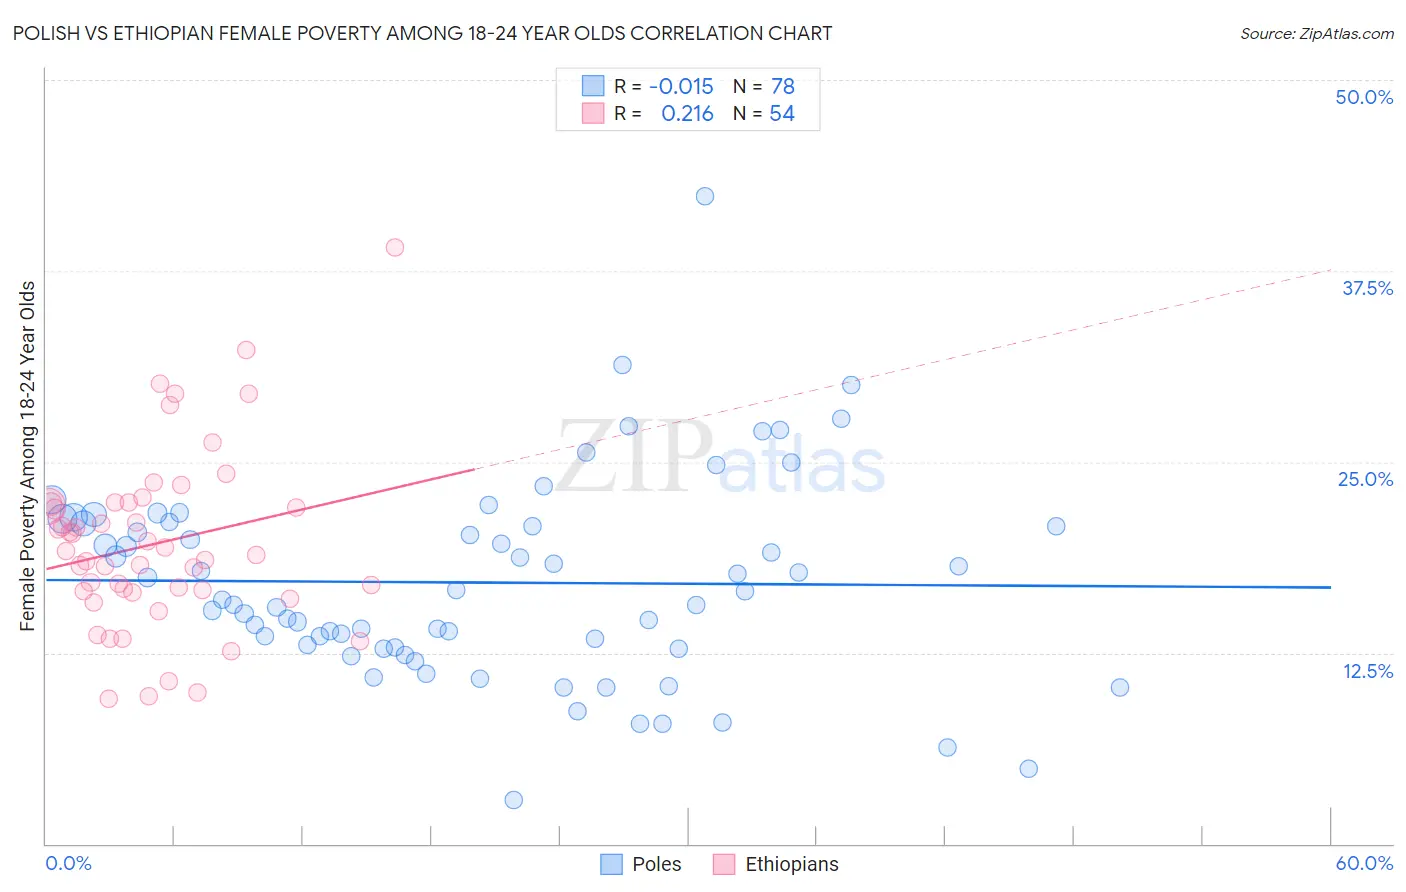 Polish vs Ethiopian Female Poverty Among 18-24 Year Olds